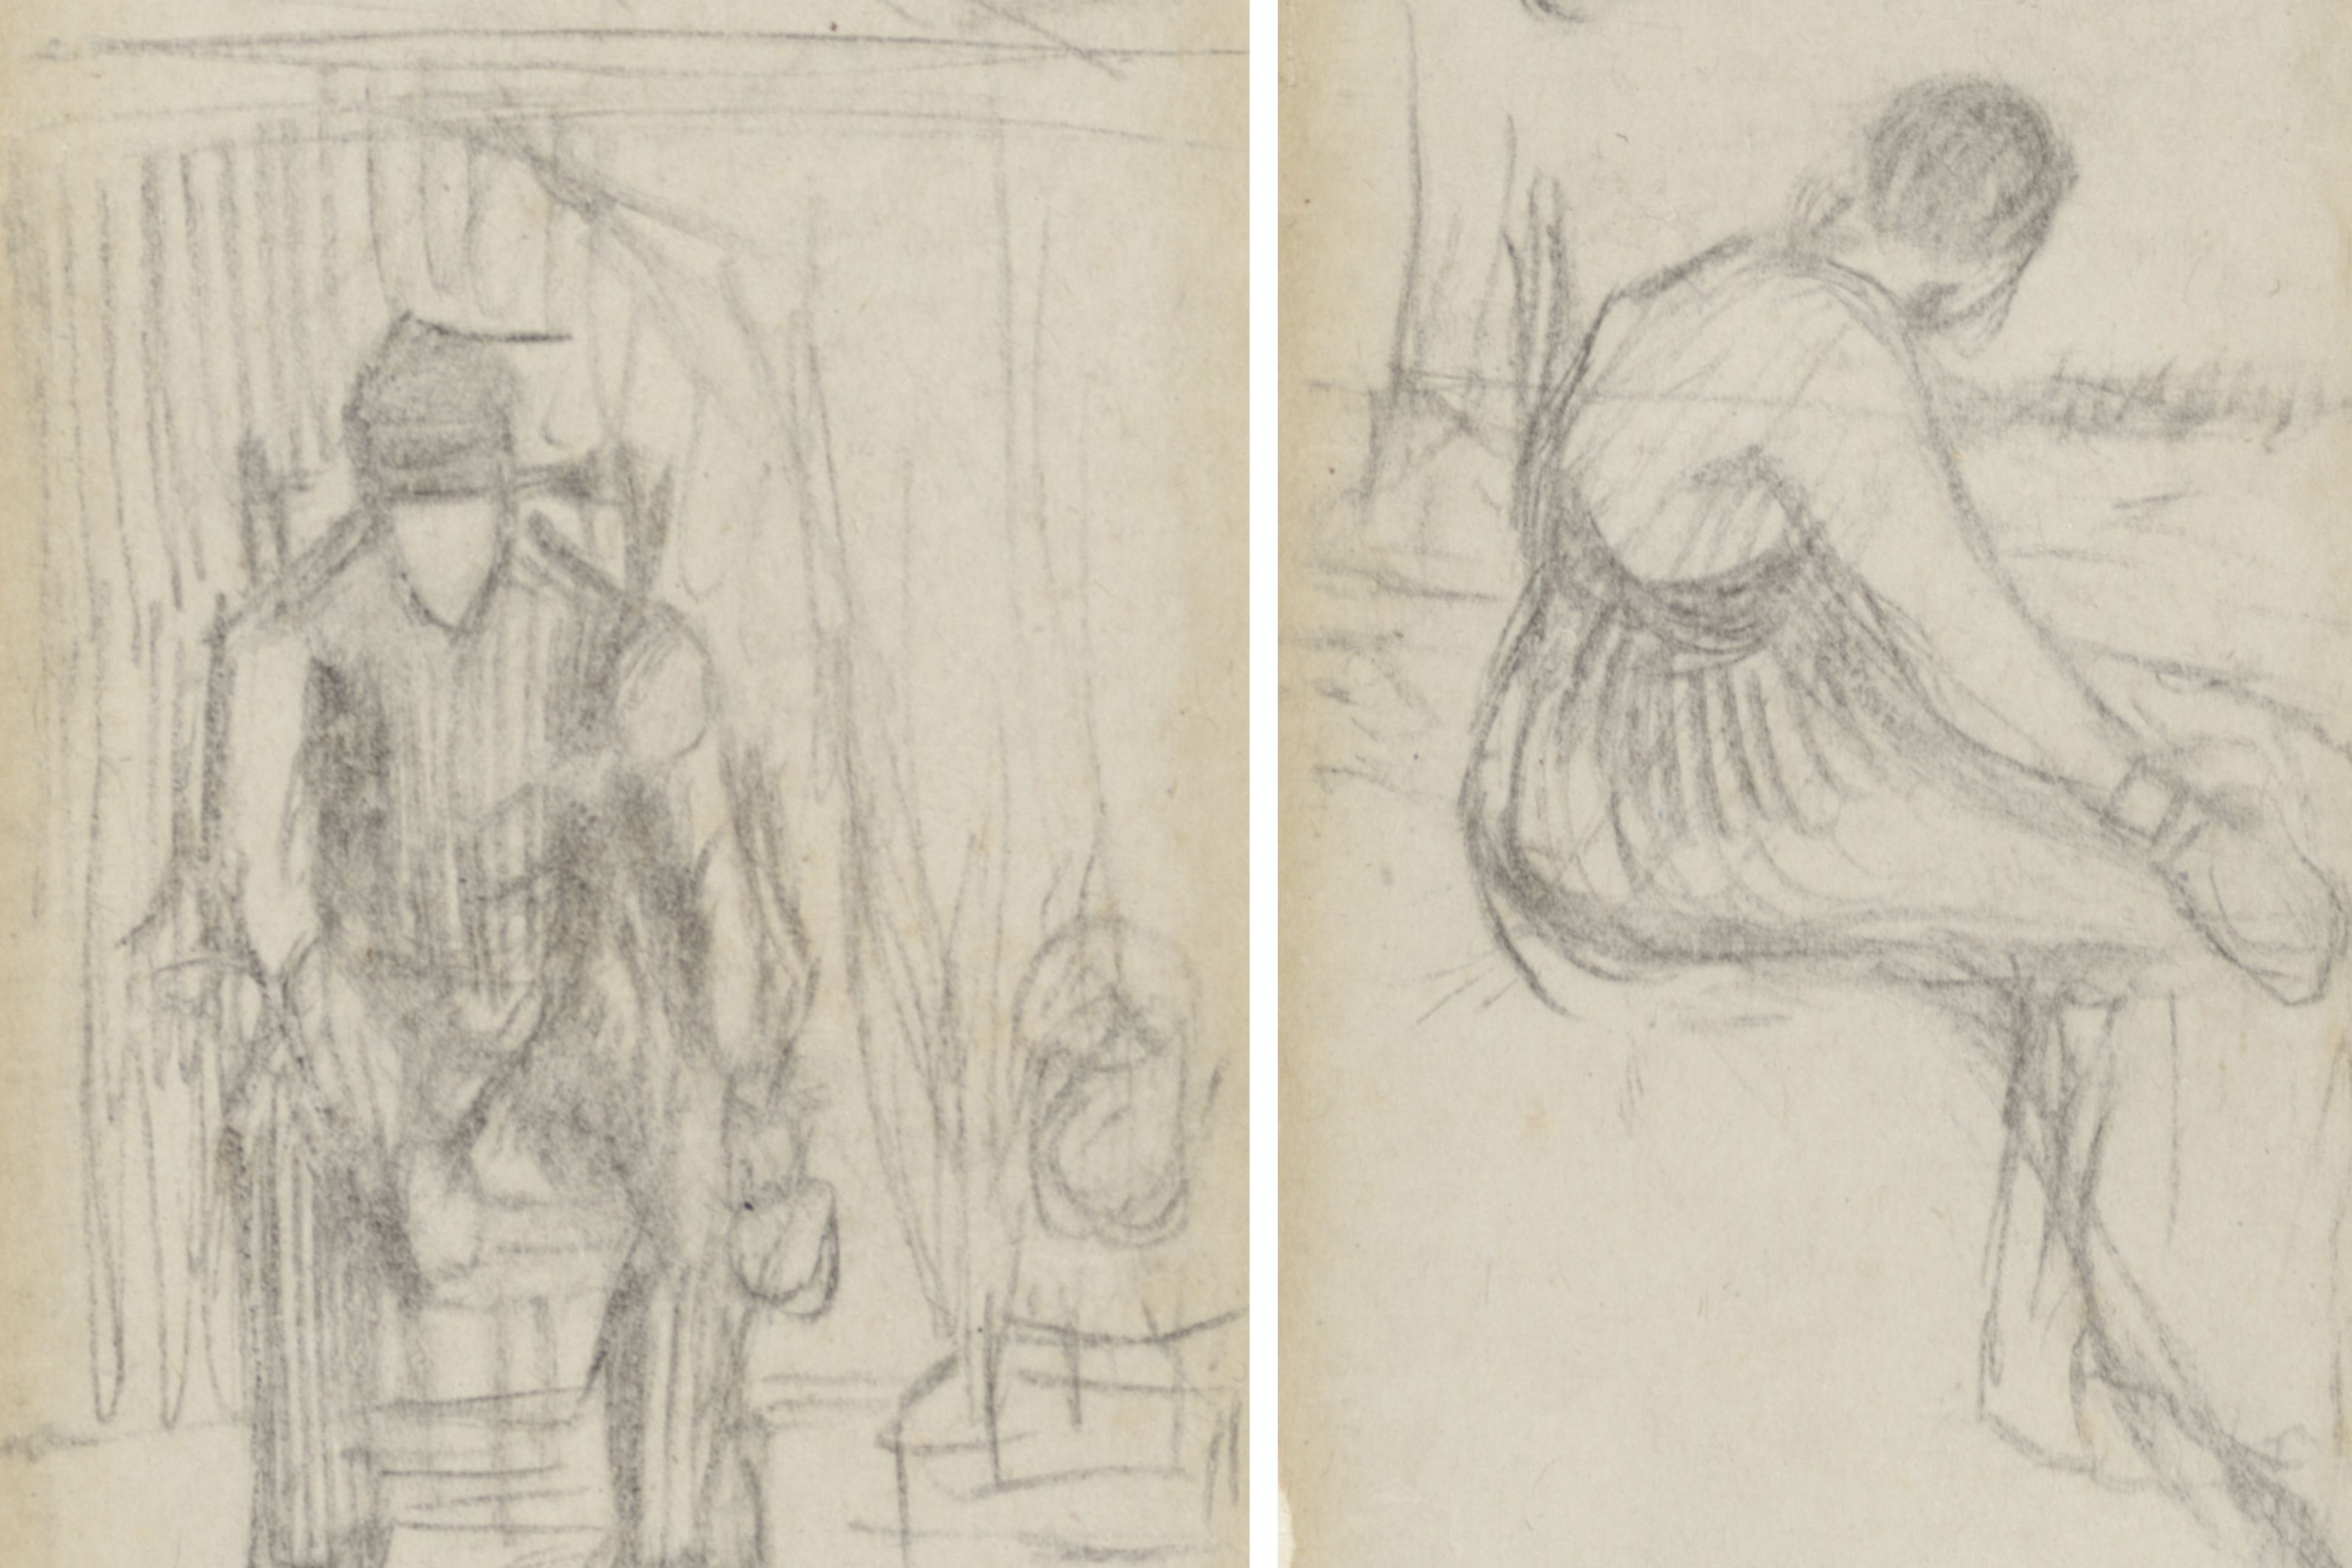 Сотрудники амстердамского Музея Ван Гога нашли три эскиза художника, спрятанные между страницами книги